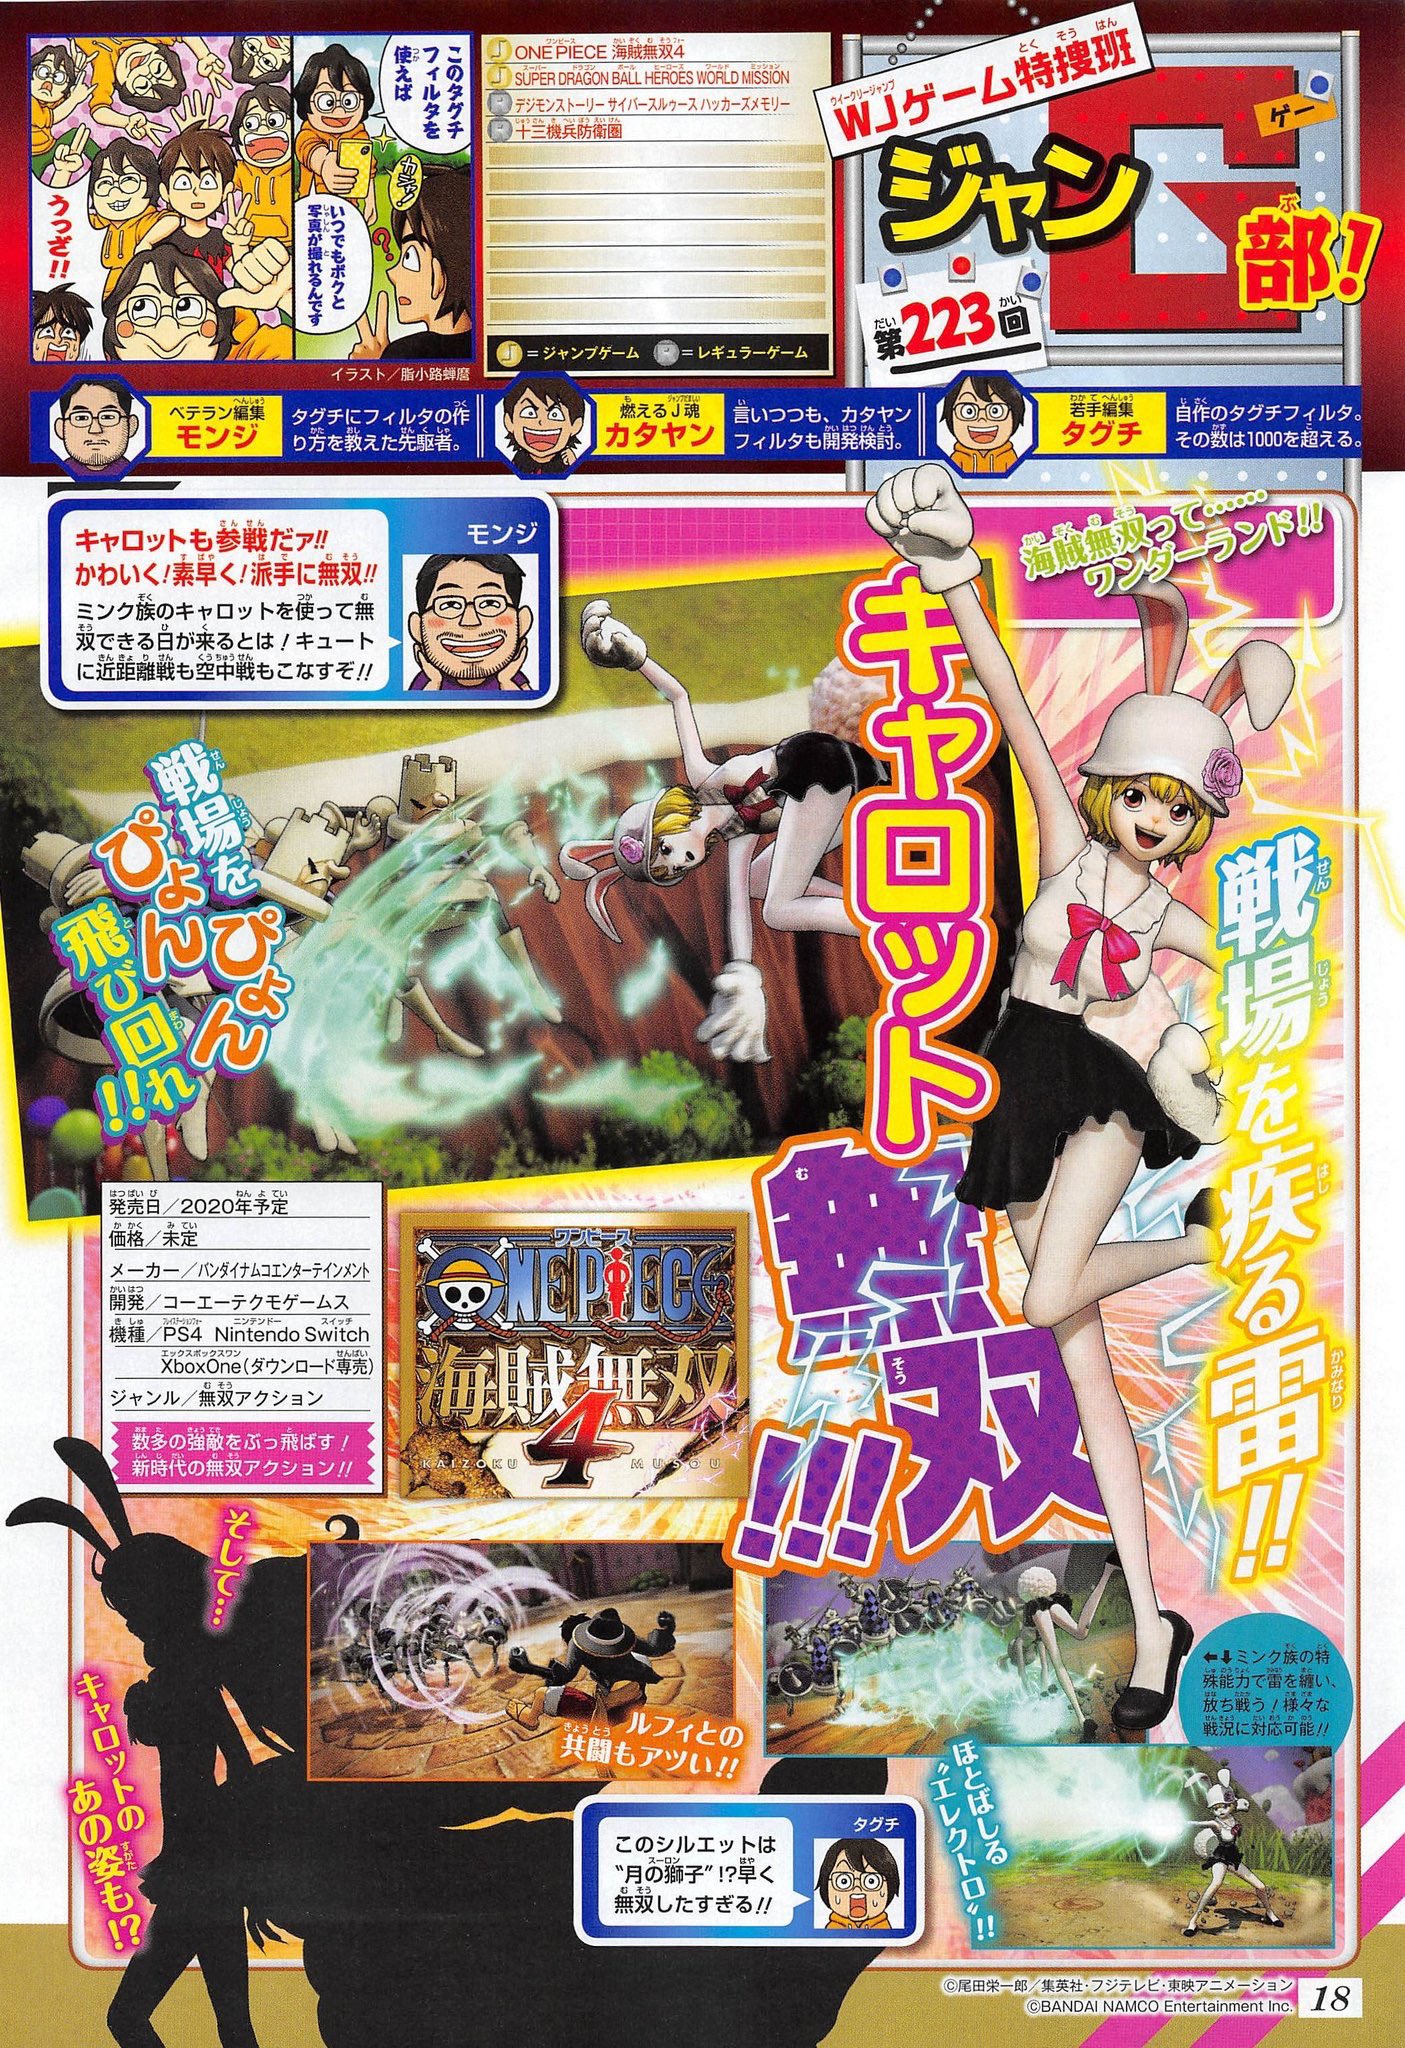 One Piece: Pirate Warriors 4 подтверждает, что Морковь и его форма Сулонга - играбельный персонаж - Первые детали